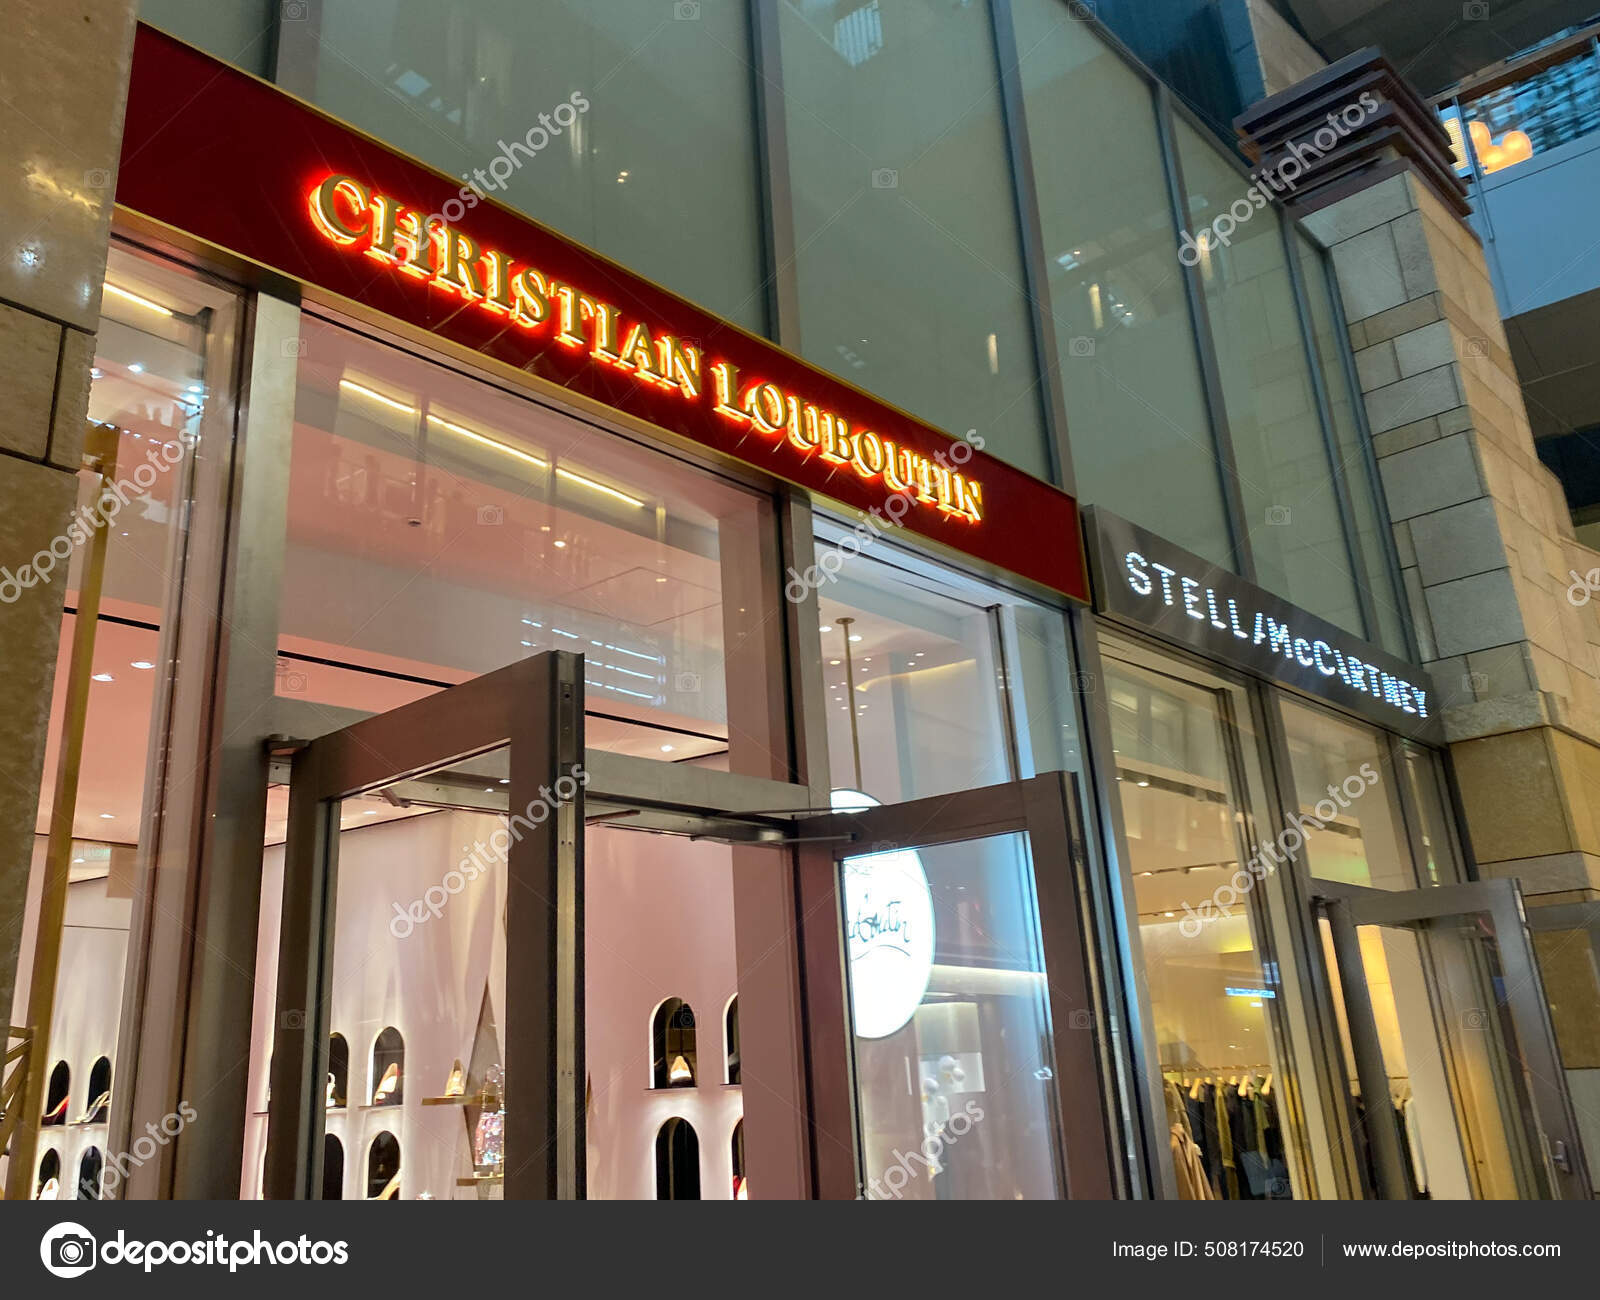 Tokyo, Japan - 23 November 2019: Christian Louboutin store sign at